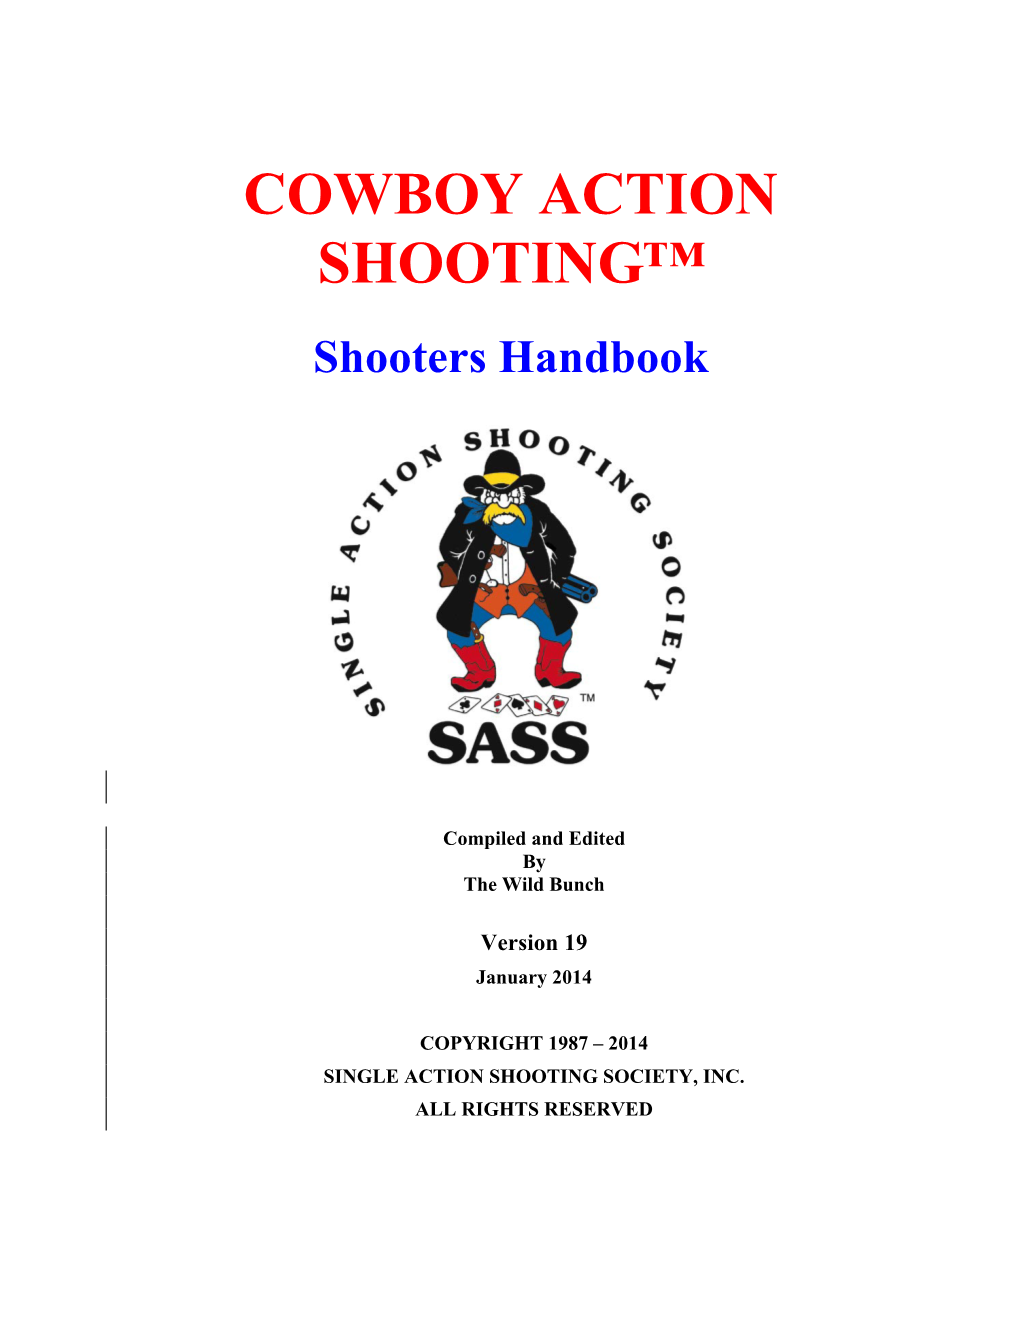 SASS Handbook Ver 19